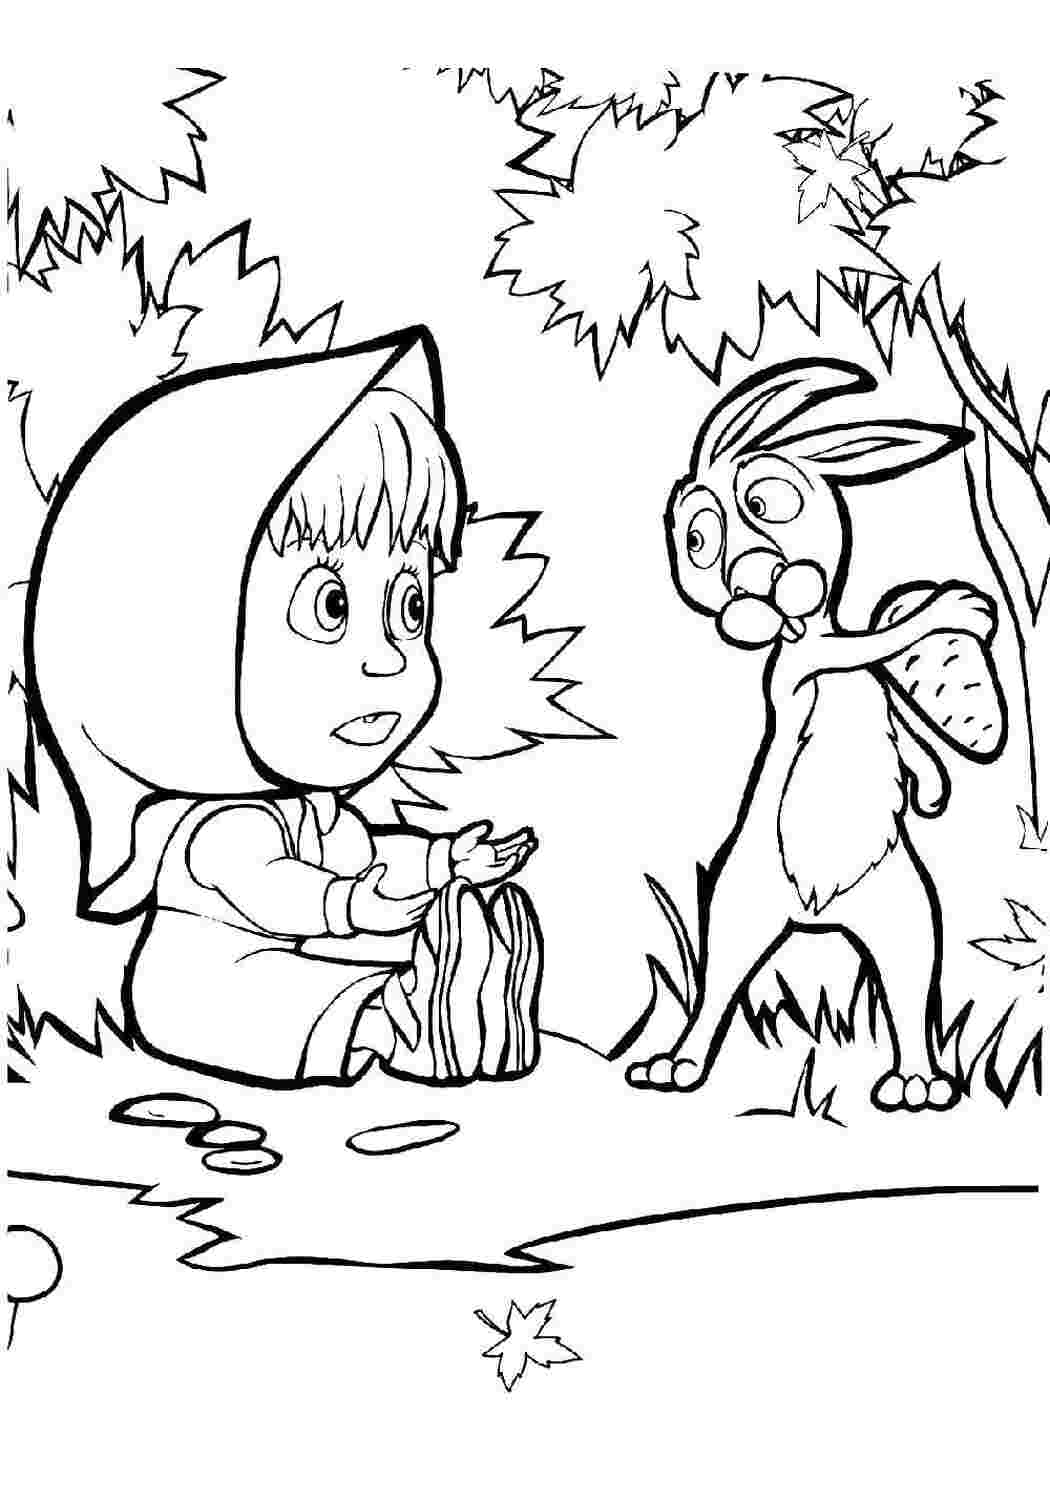 Раскраски Раскраски для детей про озорную Машу из мультфильма Маша и медведь  Заяц забрал морковку у маши